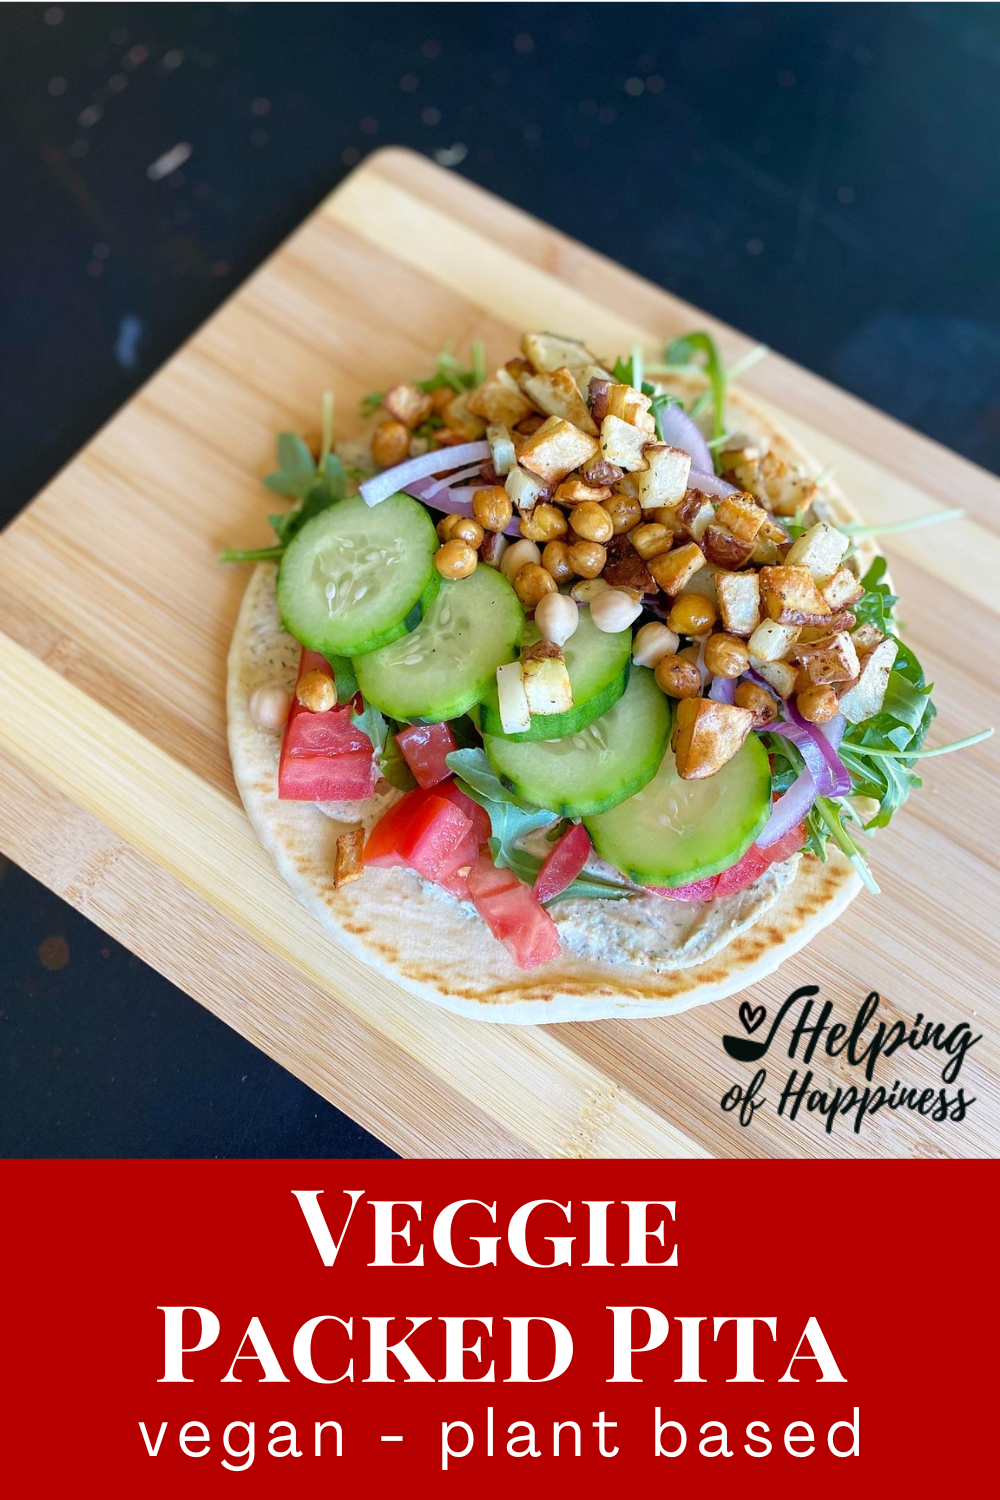 Veggie Packed Pita - vegan plant based - pin 5.png